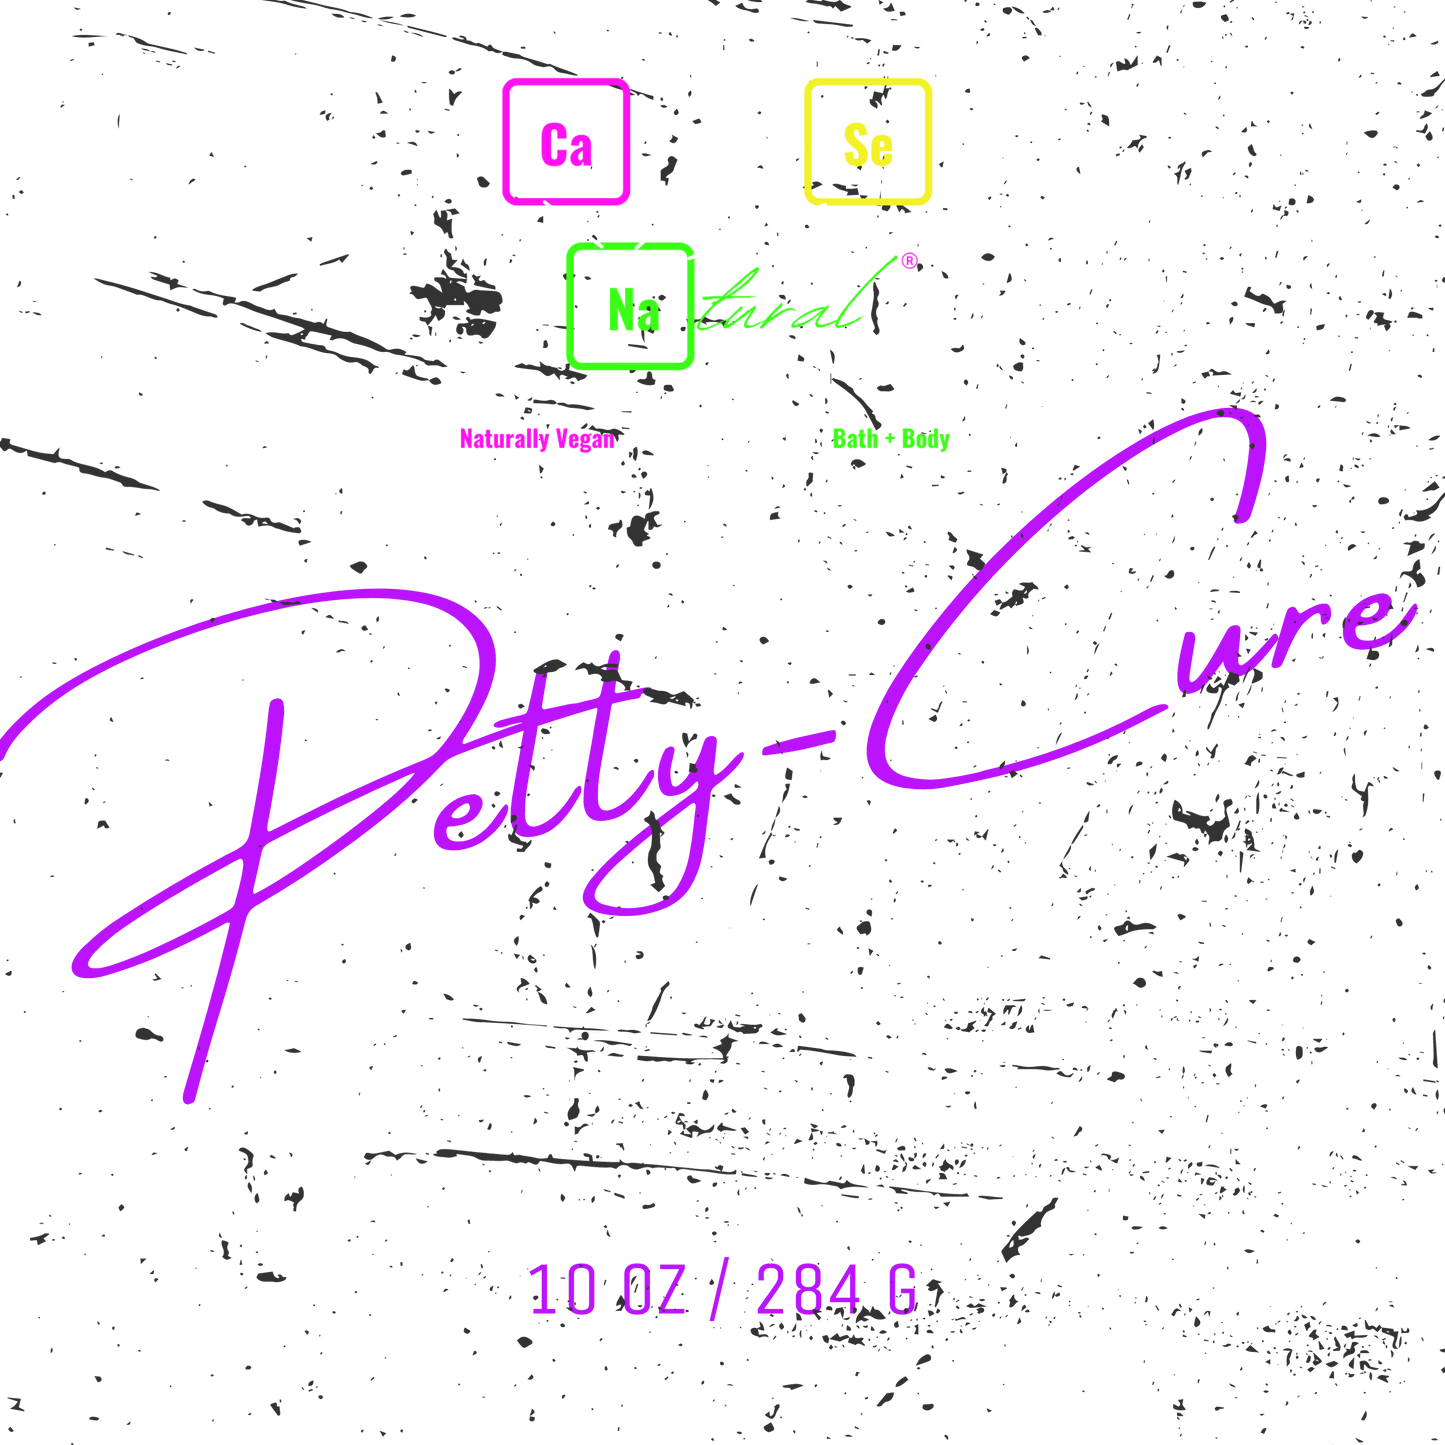 Petty-Cure Foot + Bath Soak